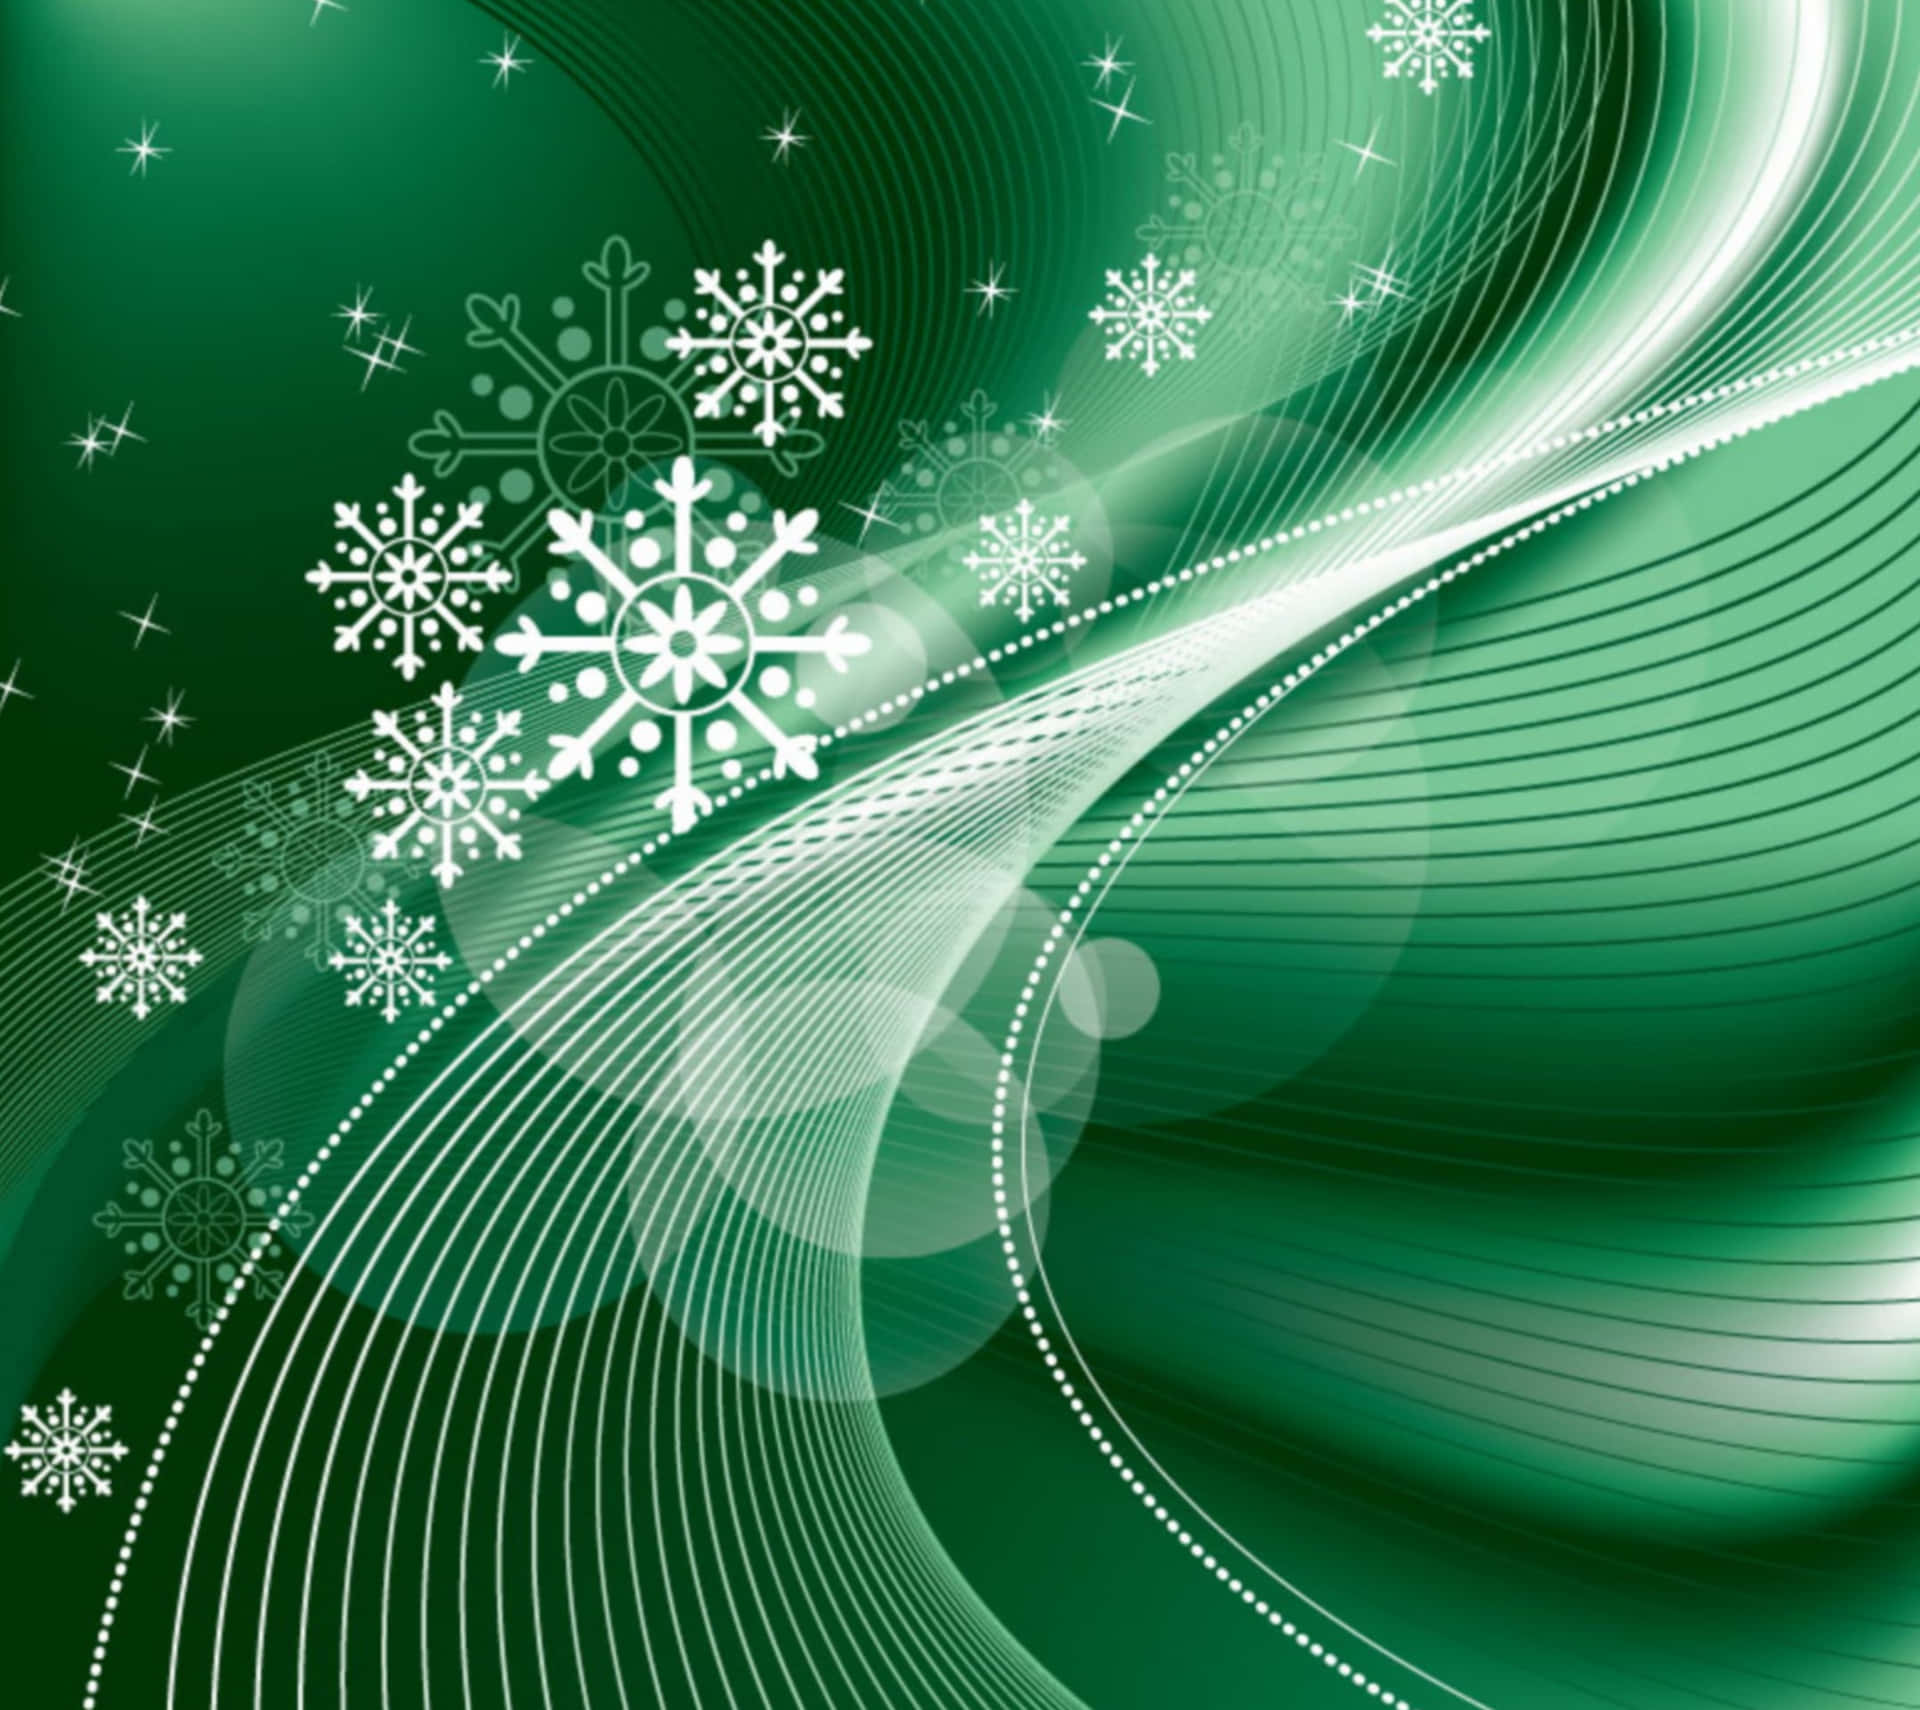 Firaen Miljövänlig Jul Med En Festlig Grön Och Vit Bakgrund.